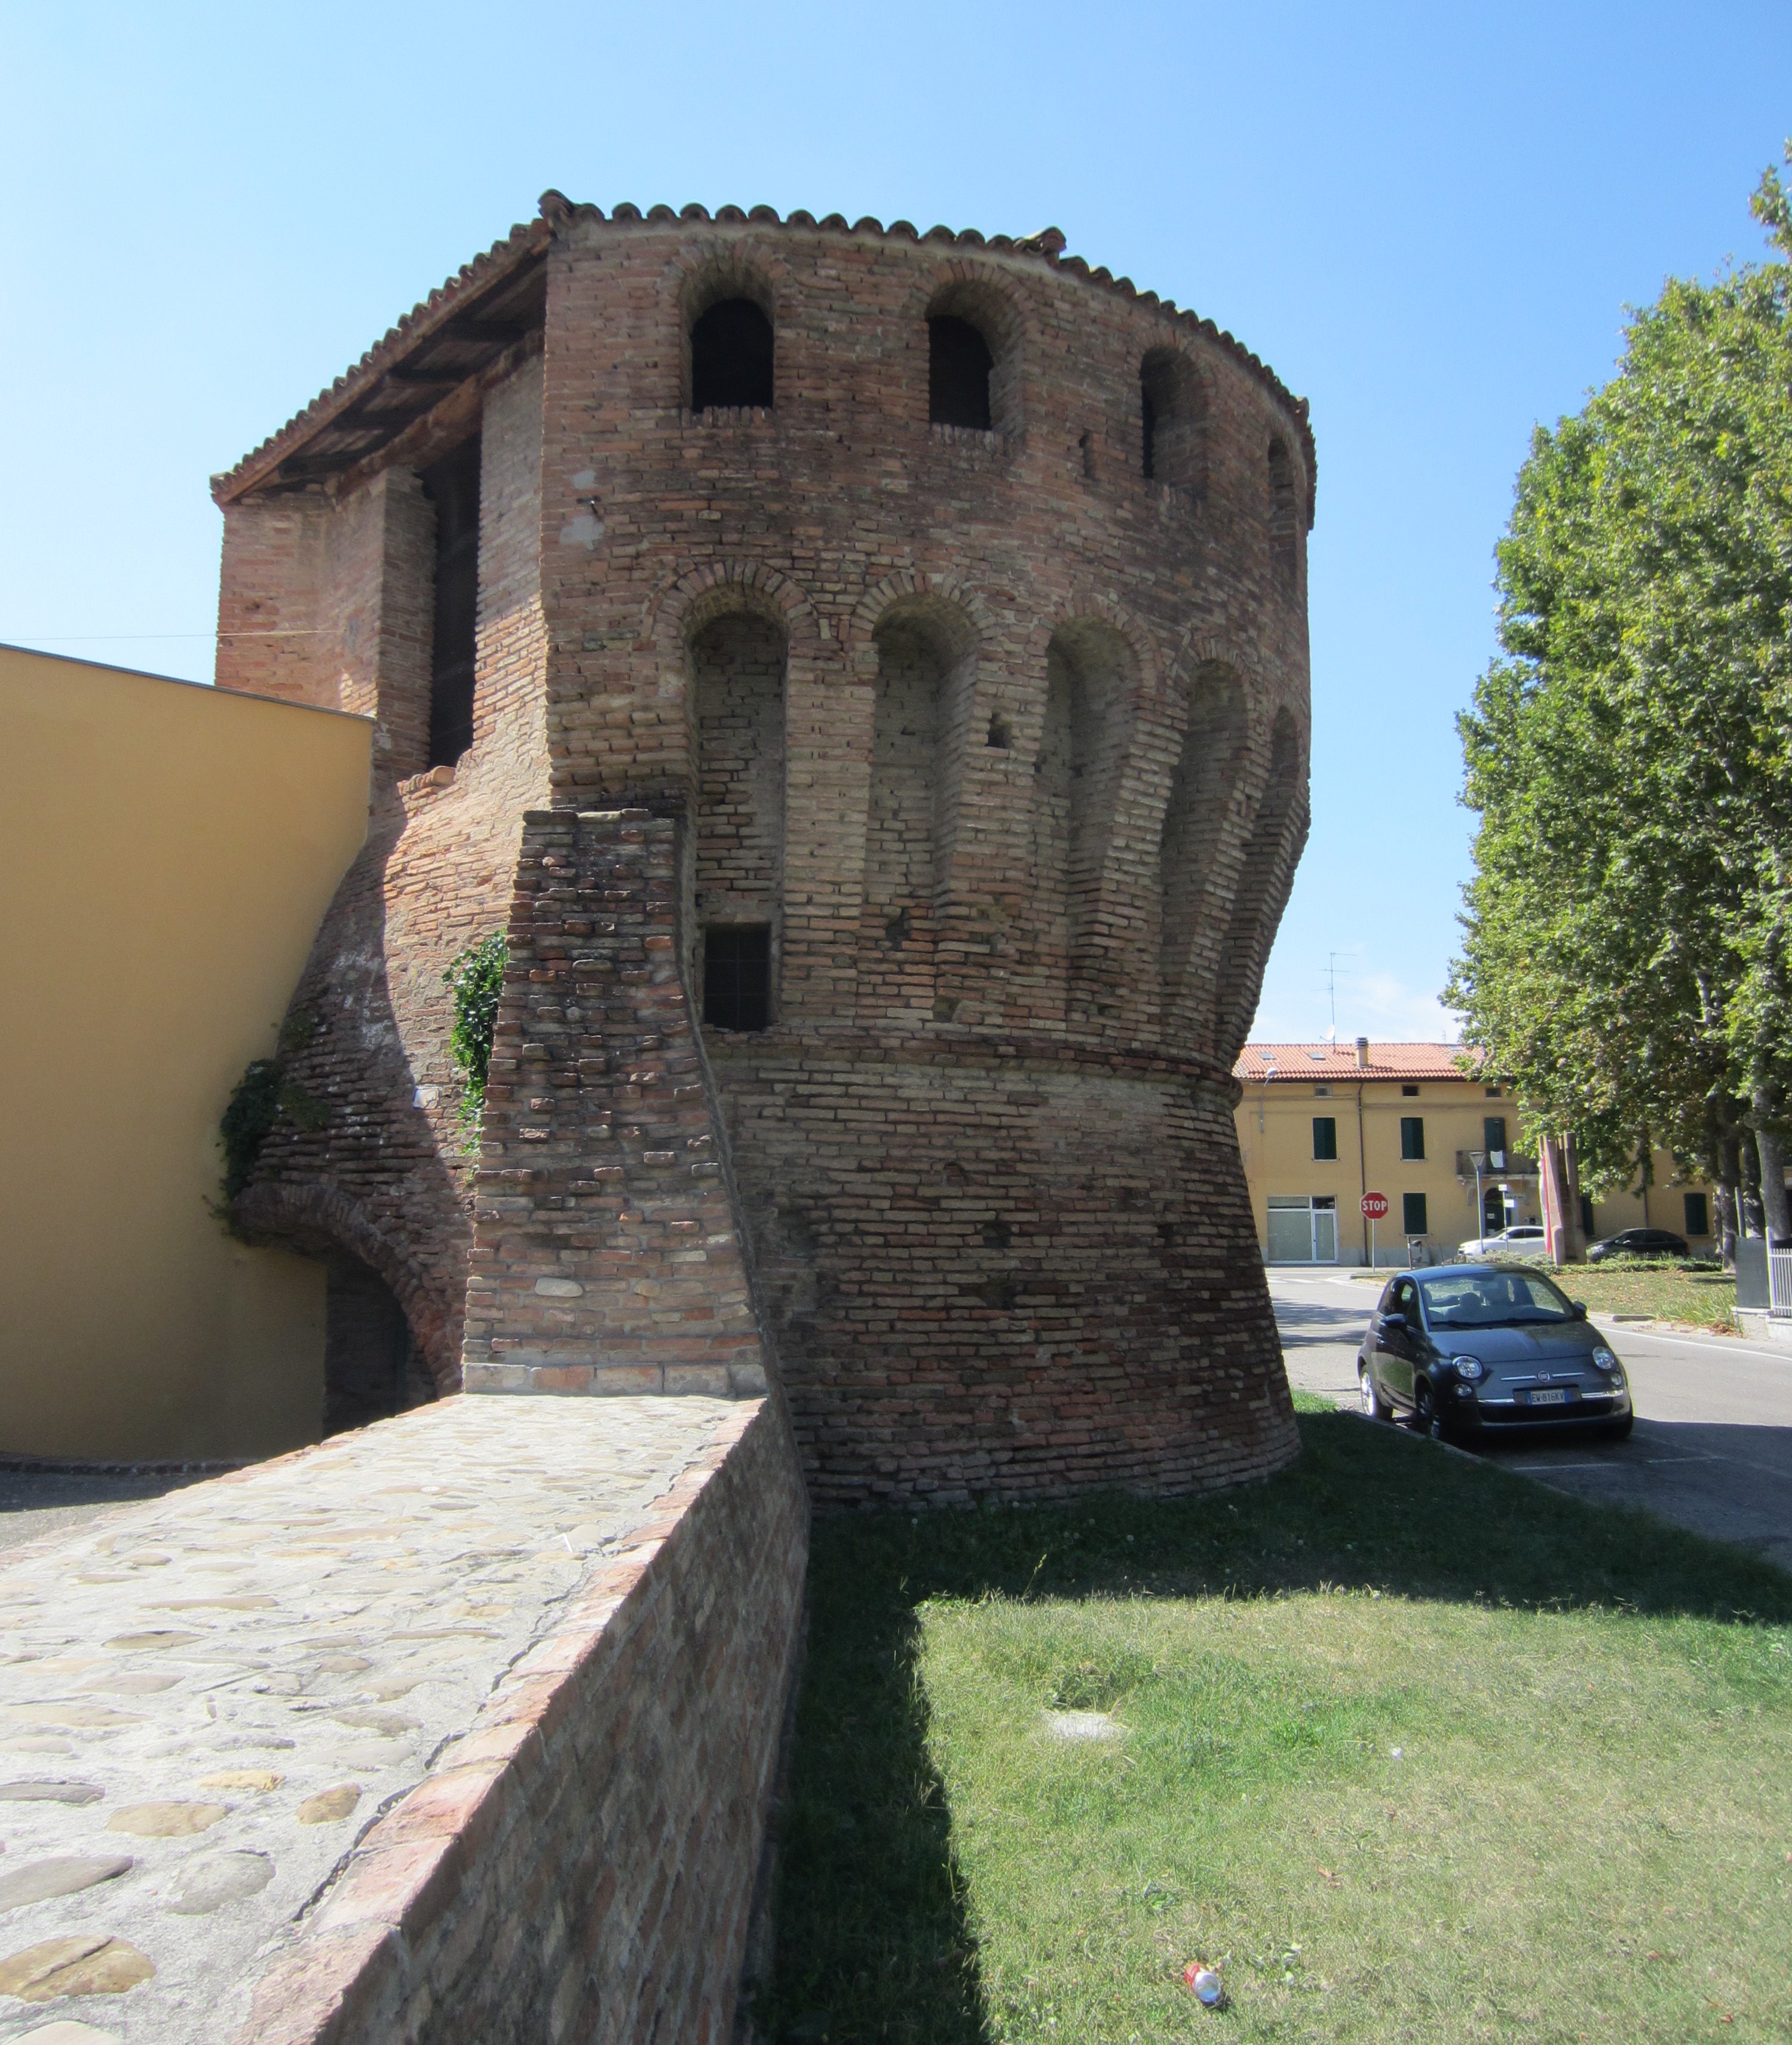 Torre nord-ovest e tratto mura ovest (torre) - Castel Guelfo di Bologna (BO) 